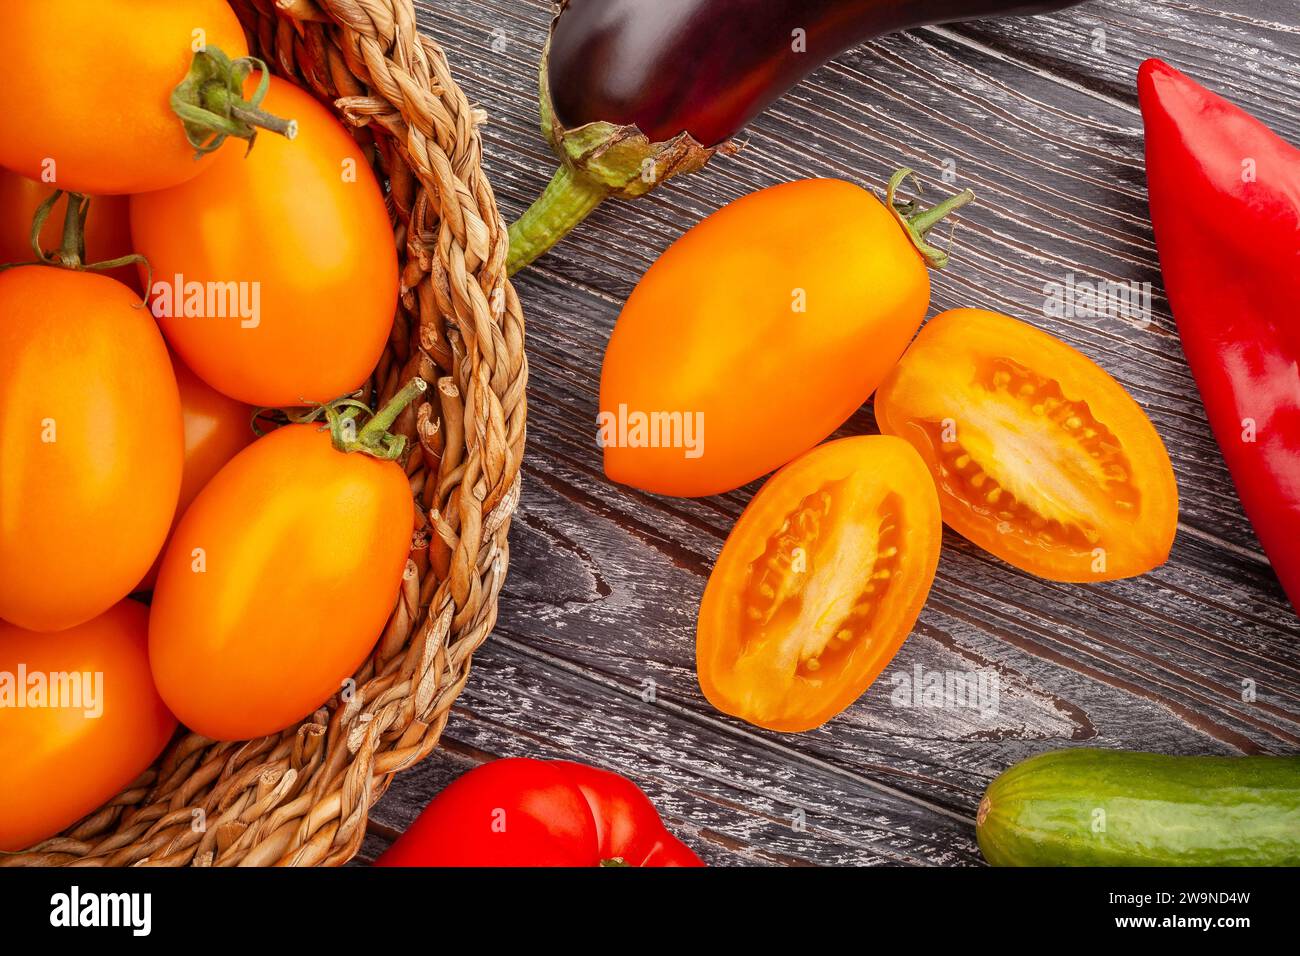 sliced orange plum tomato on wood background Stock Photo